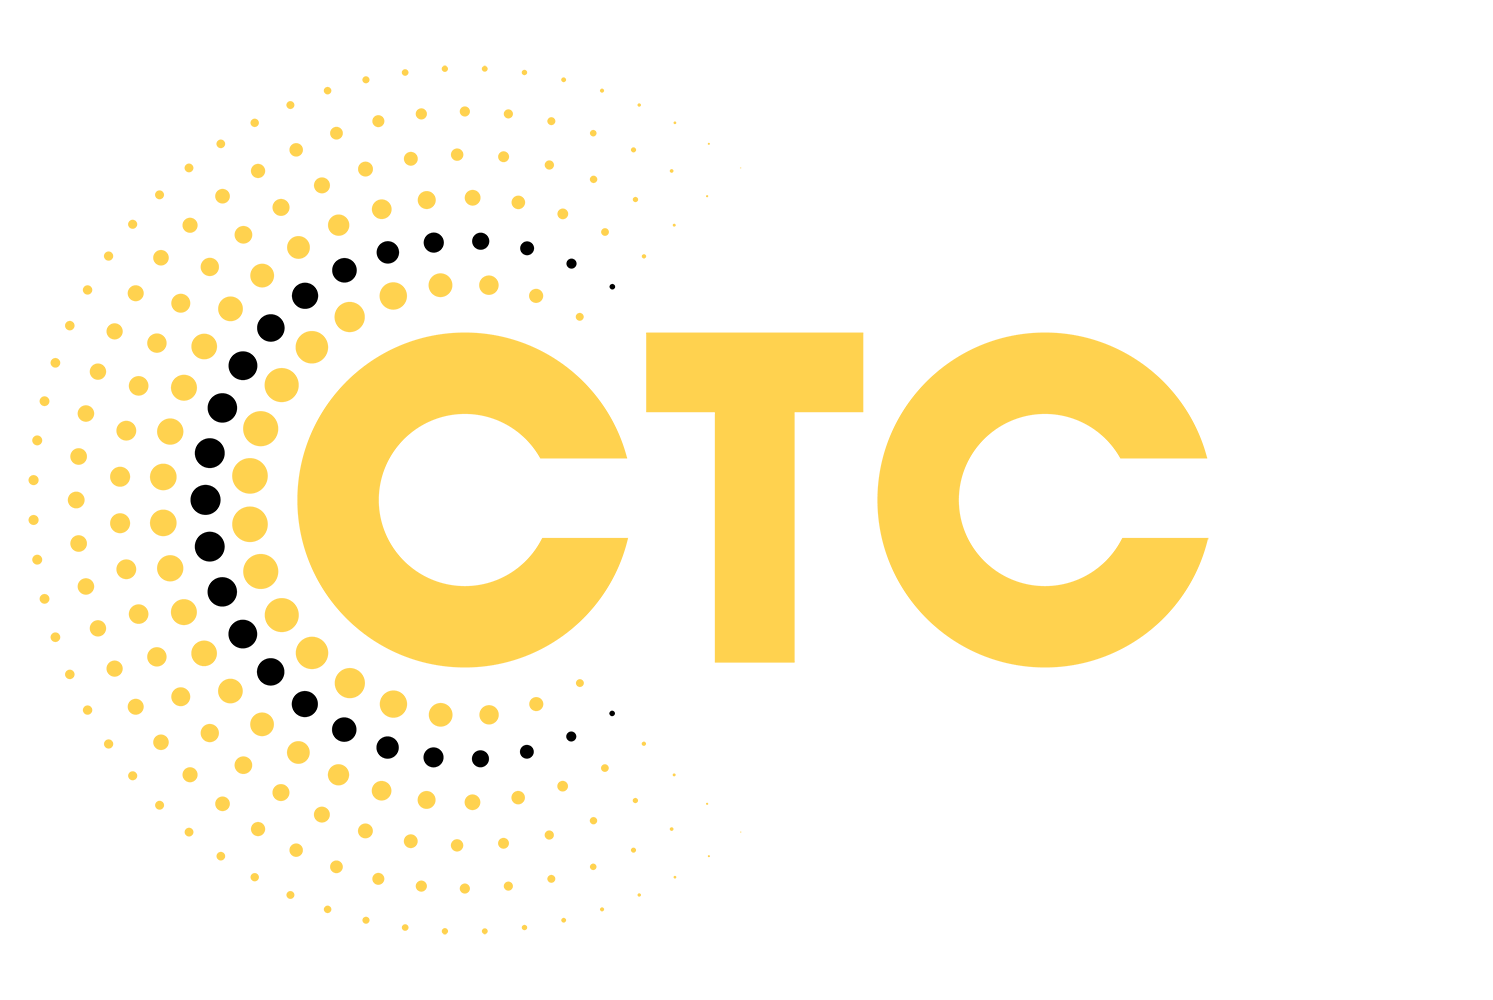 Логотип телеканала СТС